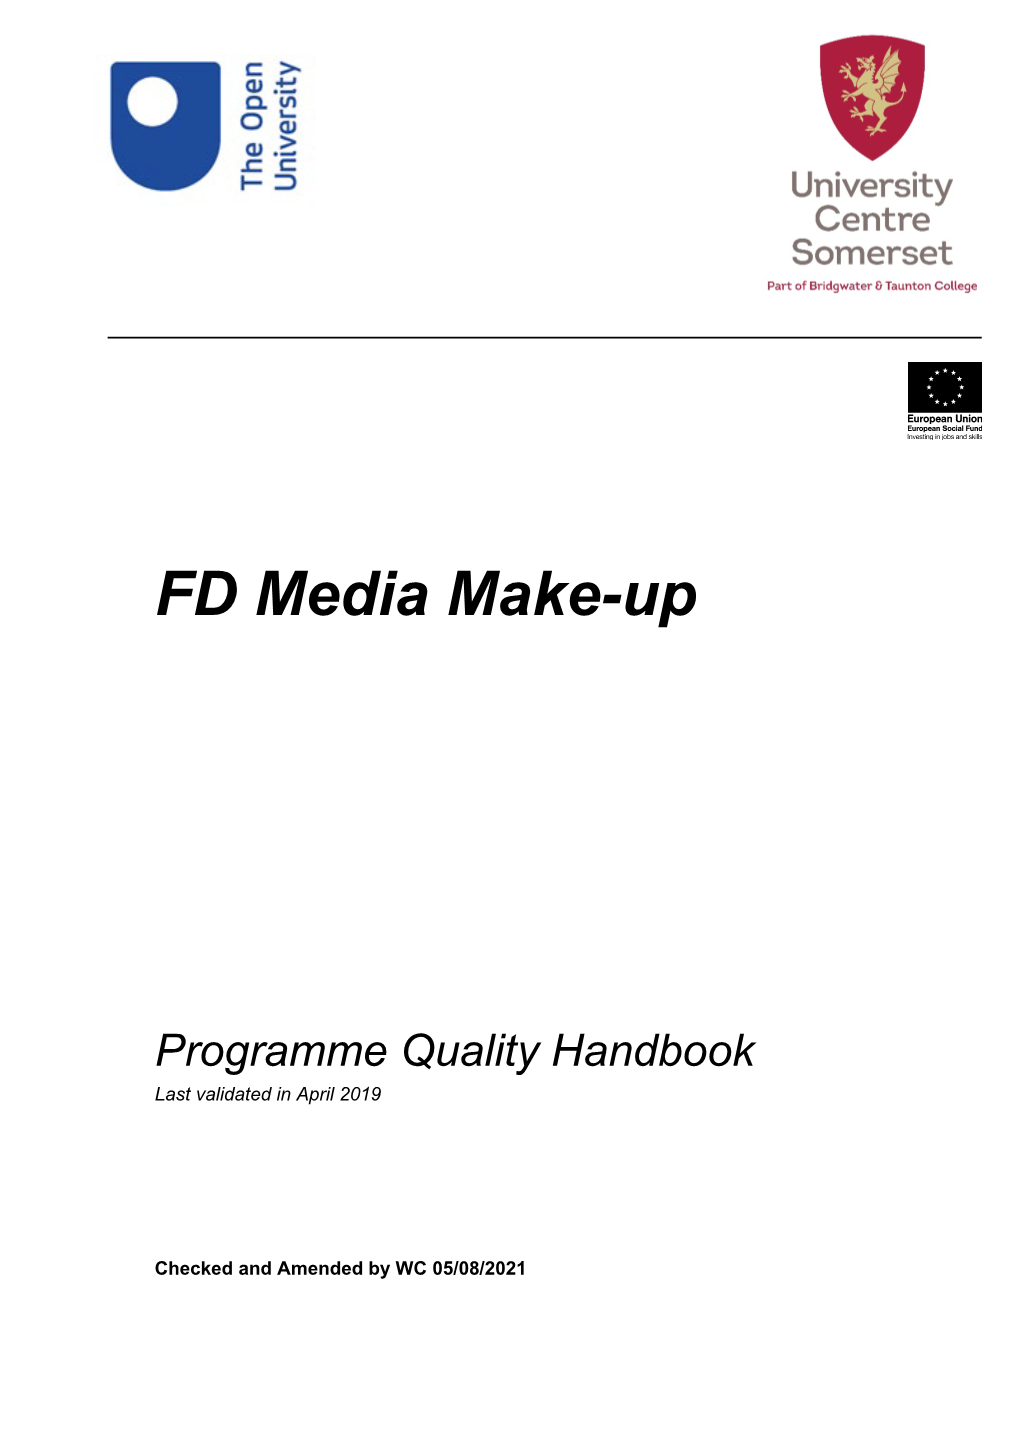 FD Media Make-Up